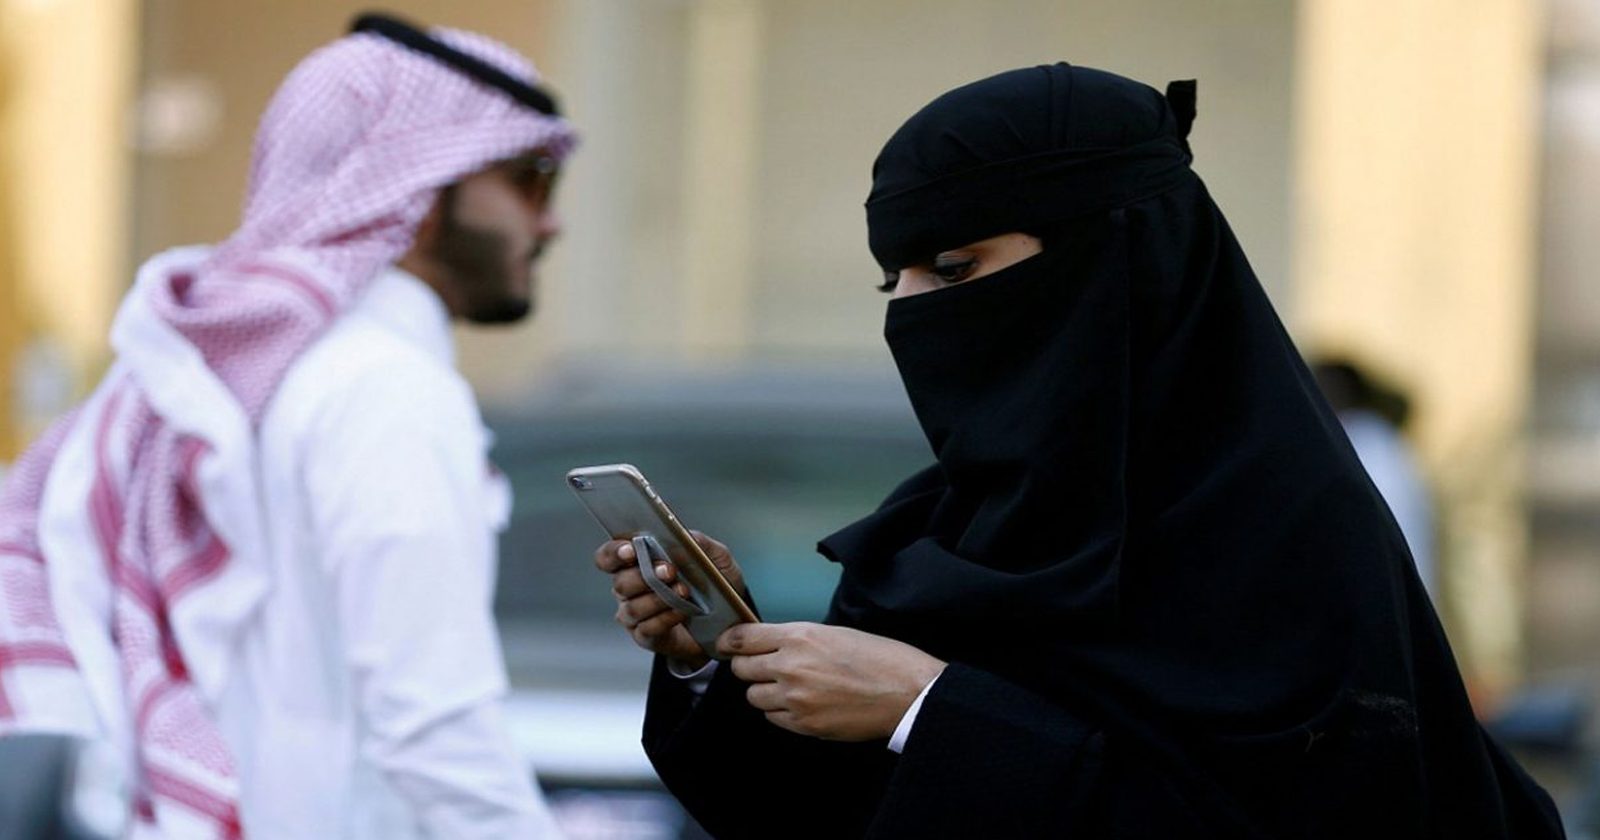 سعودية دعاها زوجها للمطعم ليخبرها بزواجه الثاني.. شاهد ما فعلته به وأثار سخرية المغردين!